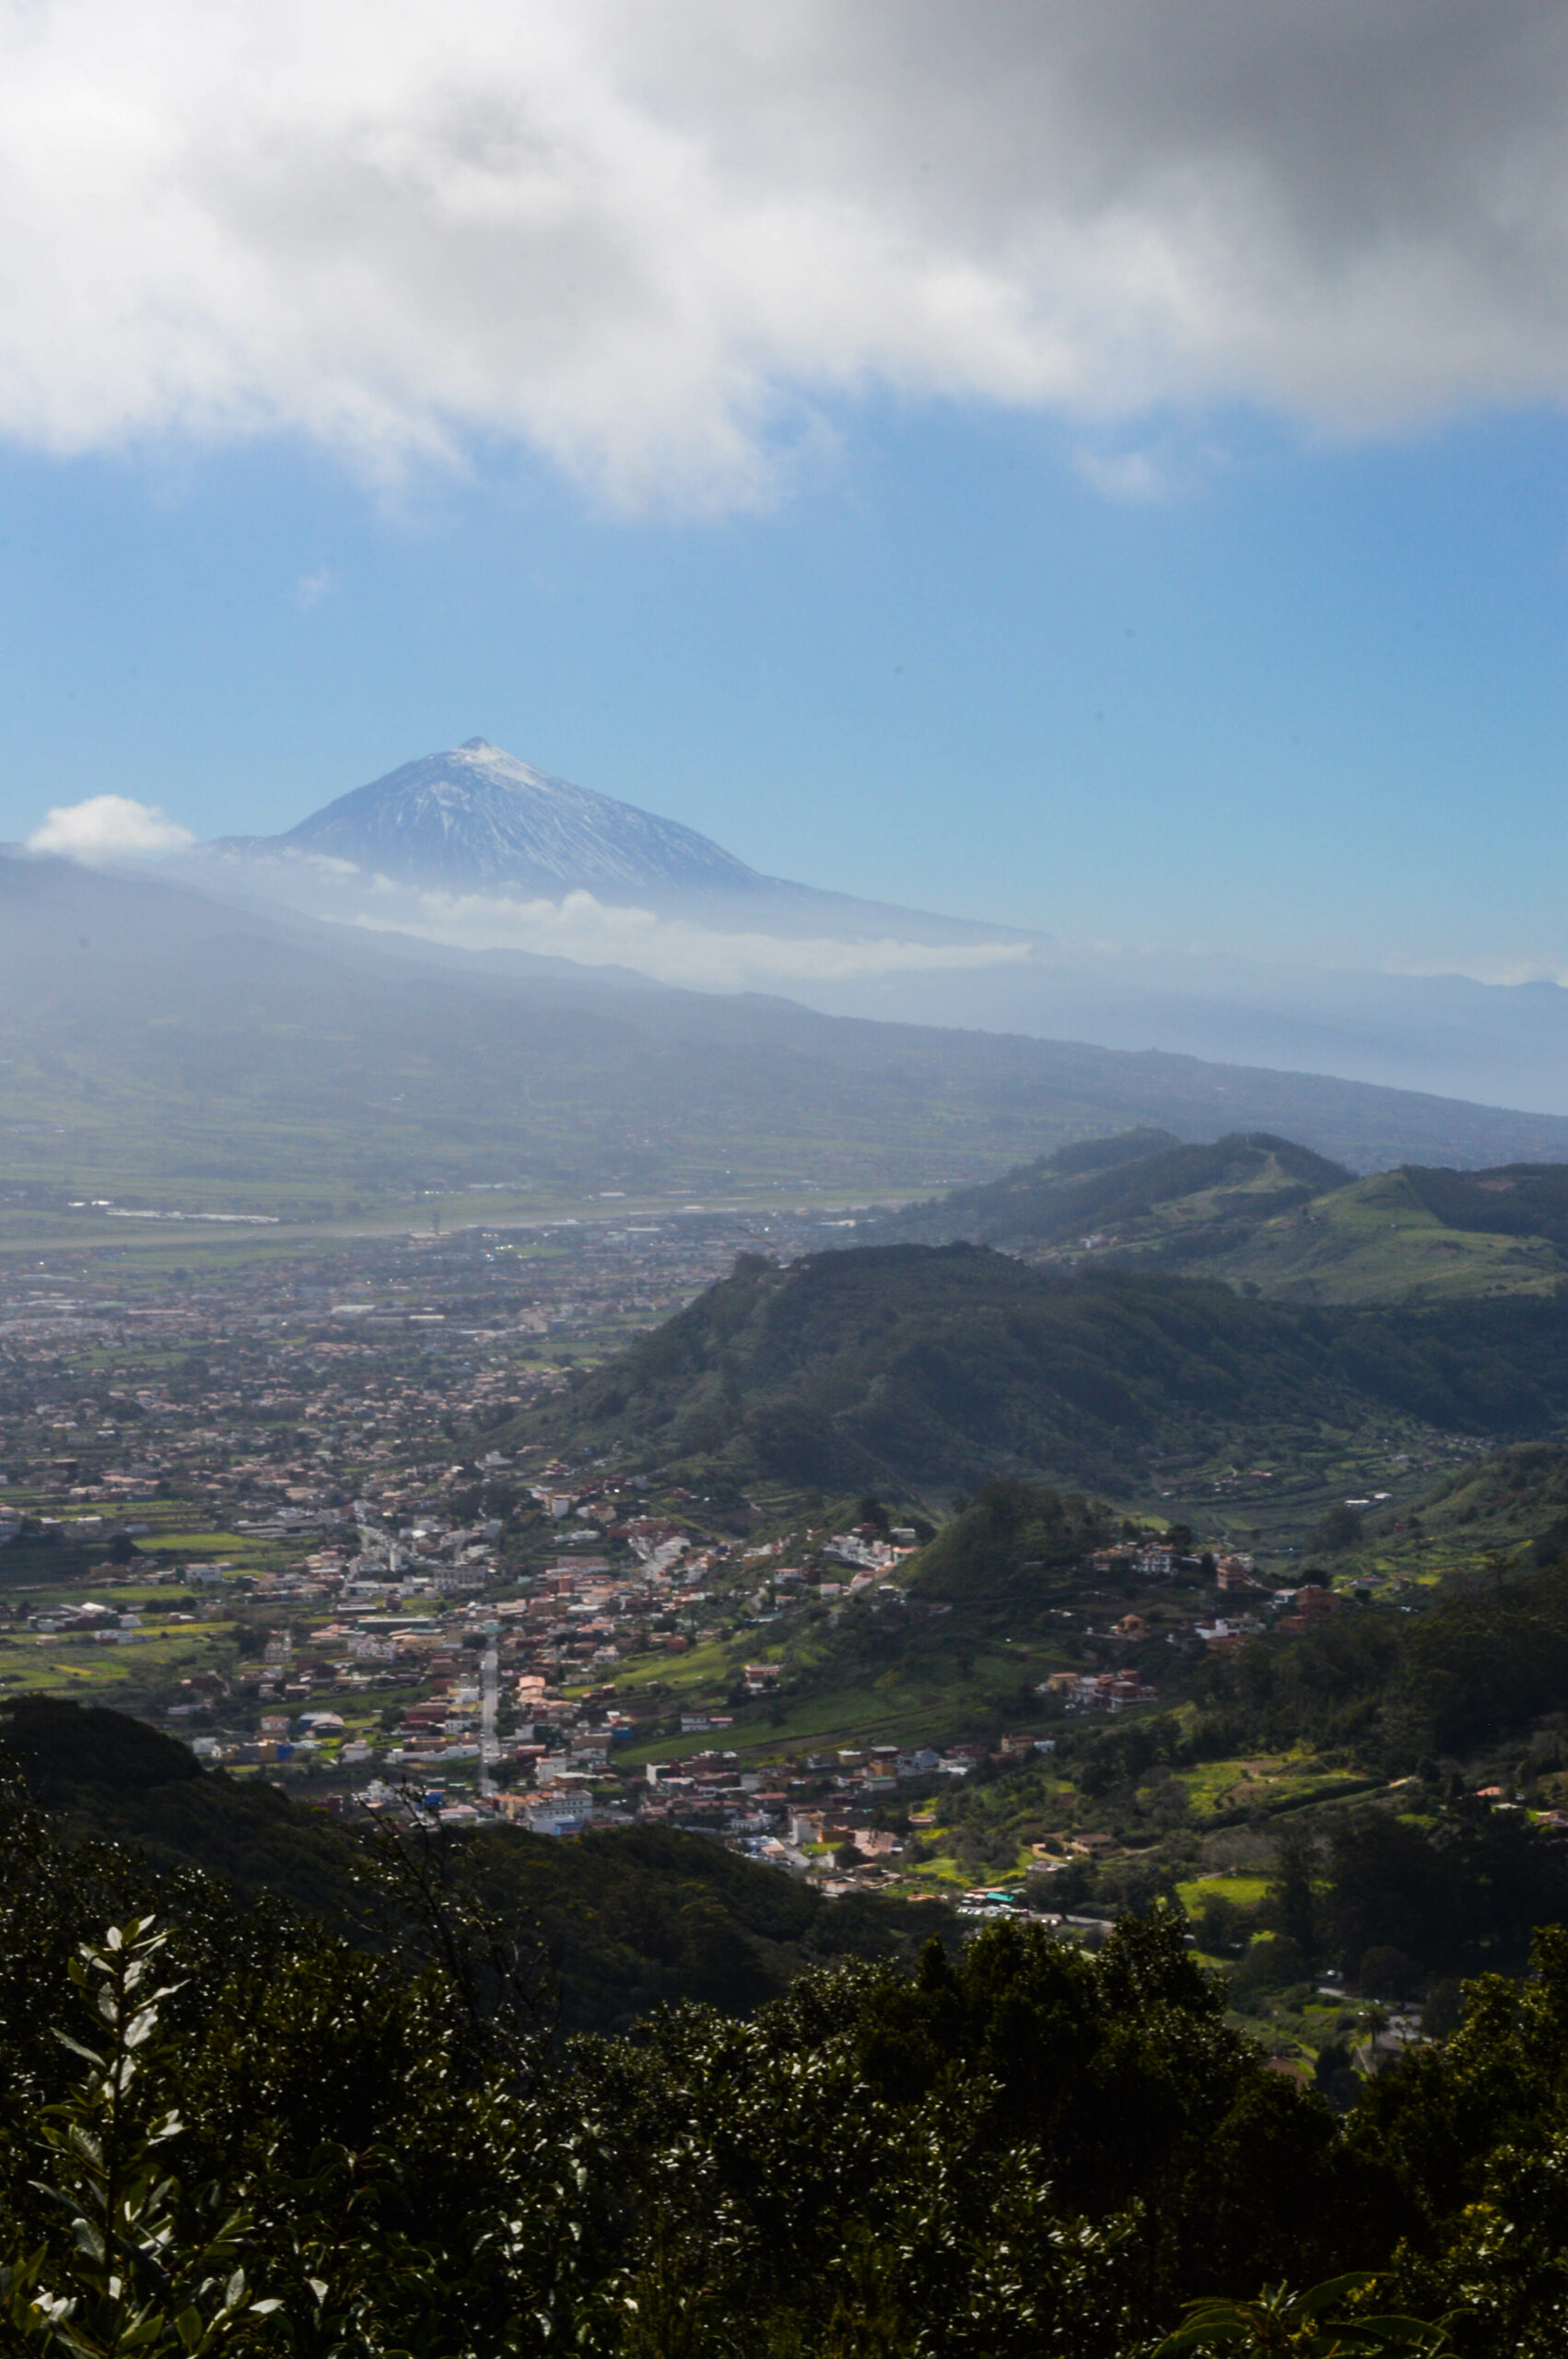 Montagnes vertes du parc Anaga, avec au milieu des maisons dans la vallée, et en arrière plan le volcan de Tenerife, le Teide, 